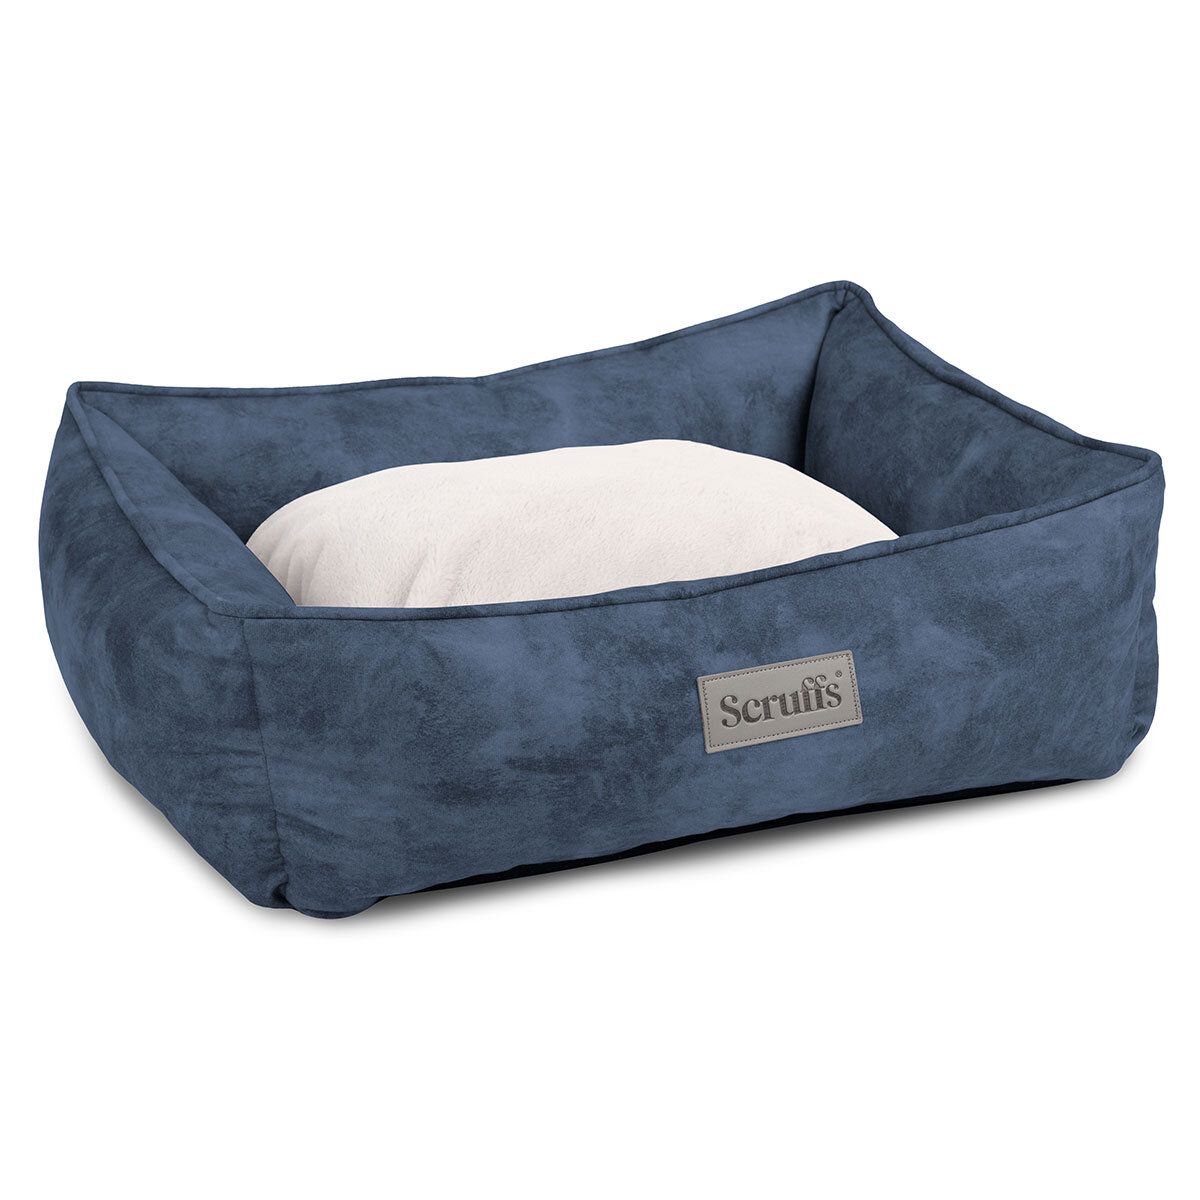 Scruffs® Kensington Pet Bed Medium, 60cm x 50cm in Blue